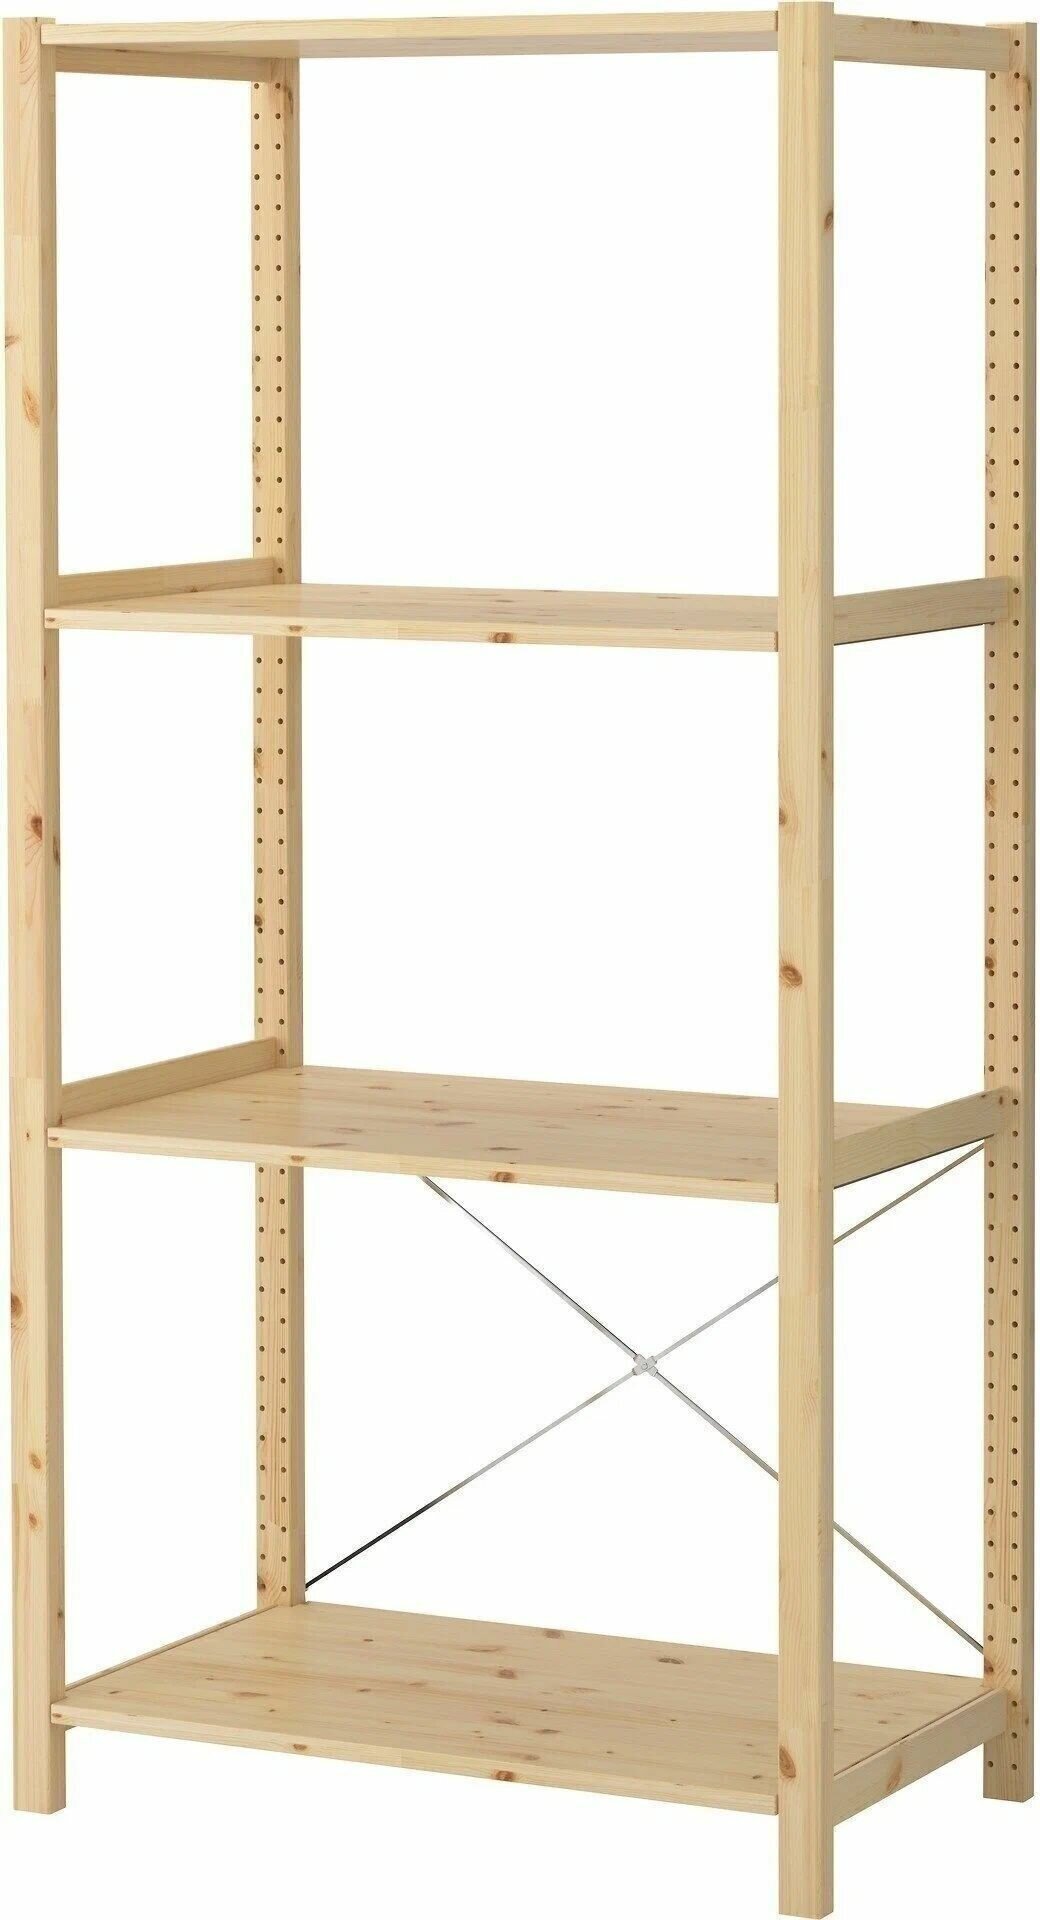 Стеллаж деревянный напольный IKEA Ivar с 4 полками, открытый шкаф Икеа Ивар напольный, 89*50*179 4 полки